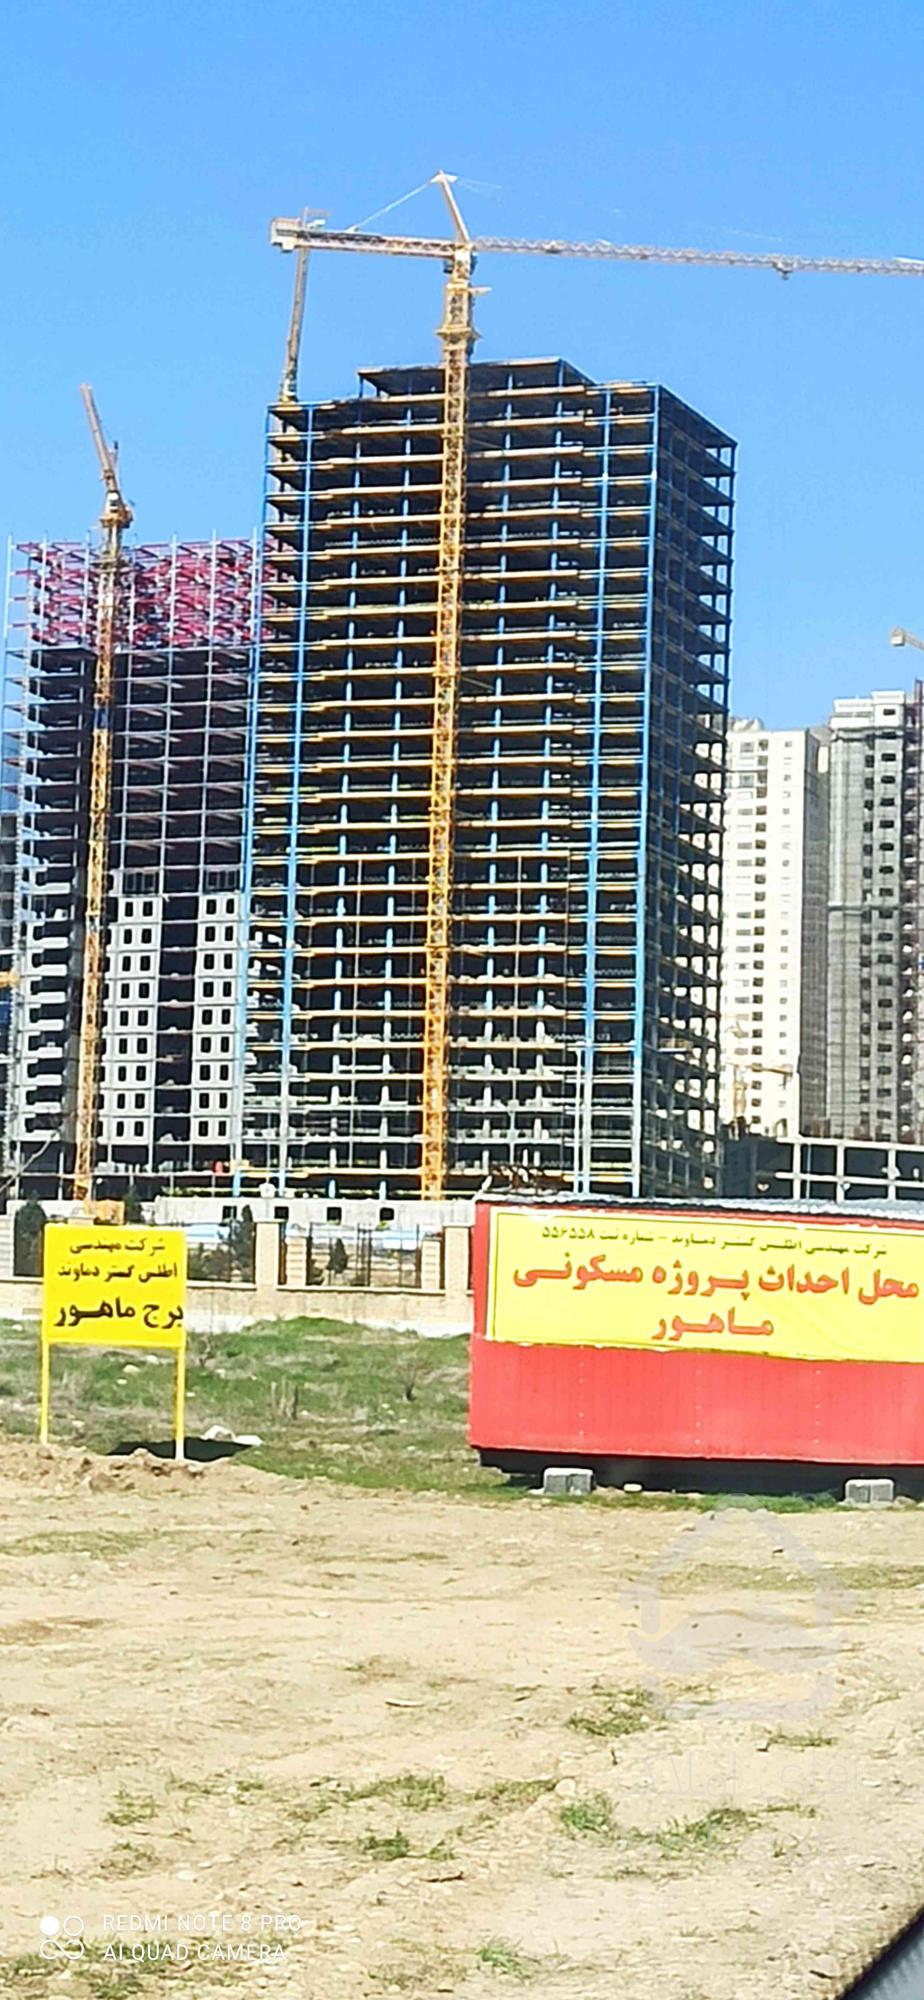 پیش فروش آپارتمان کوهستانی ماهور در منطقه 22 تهران